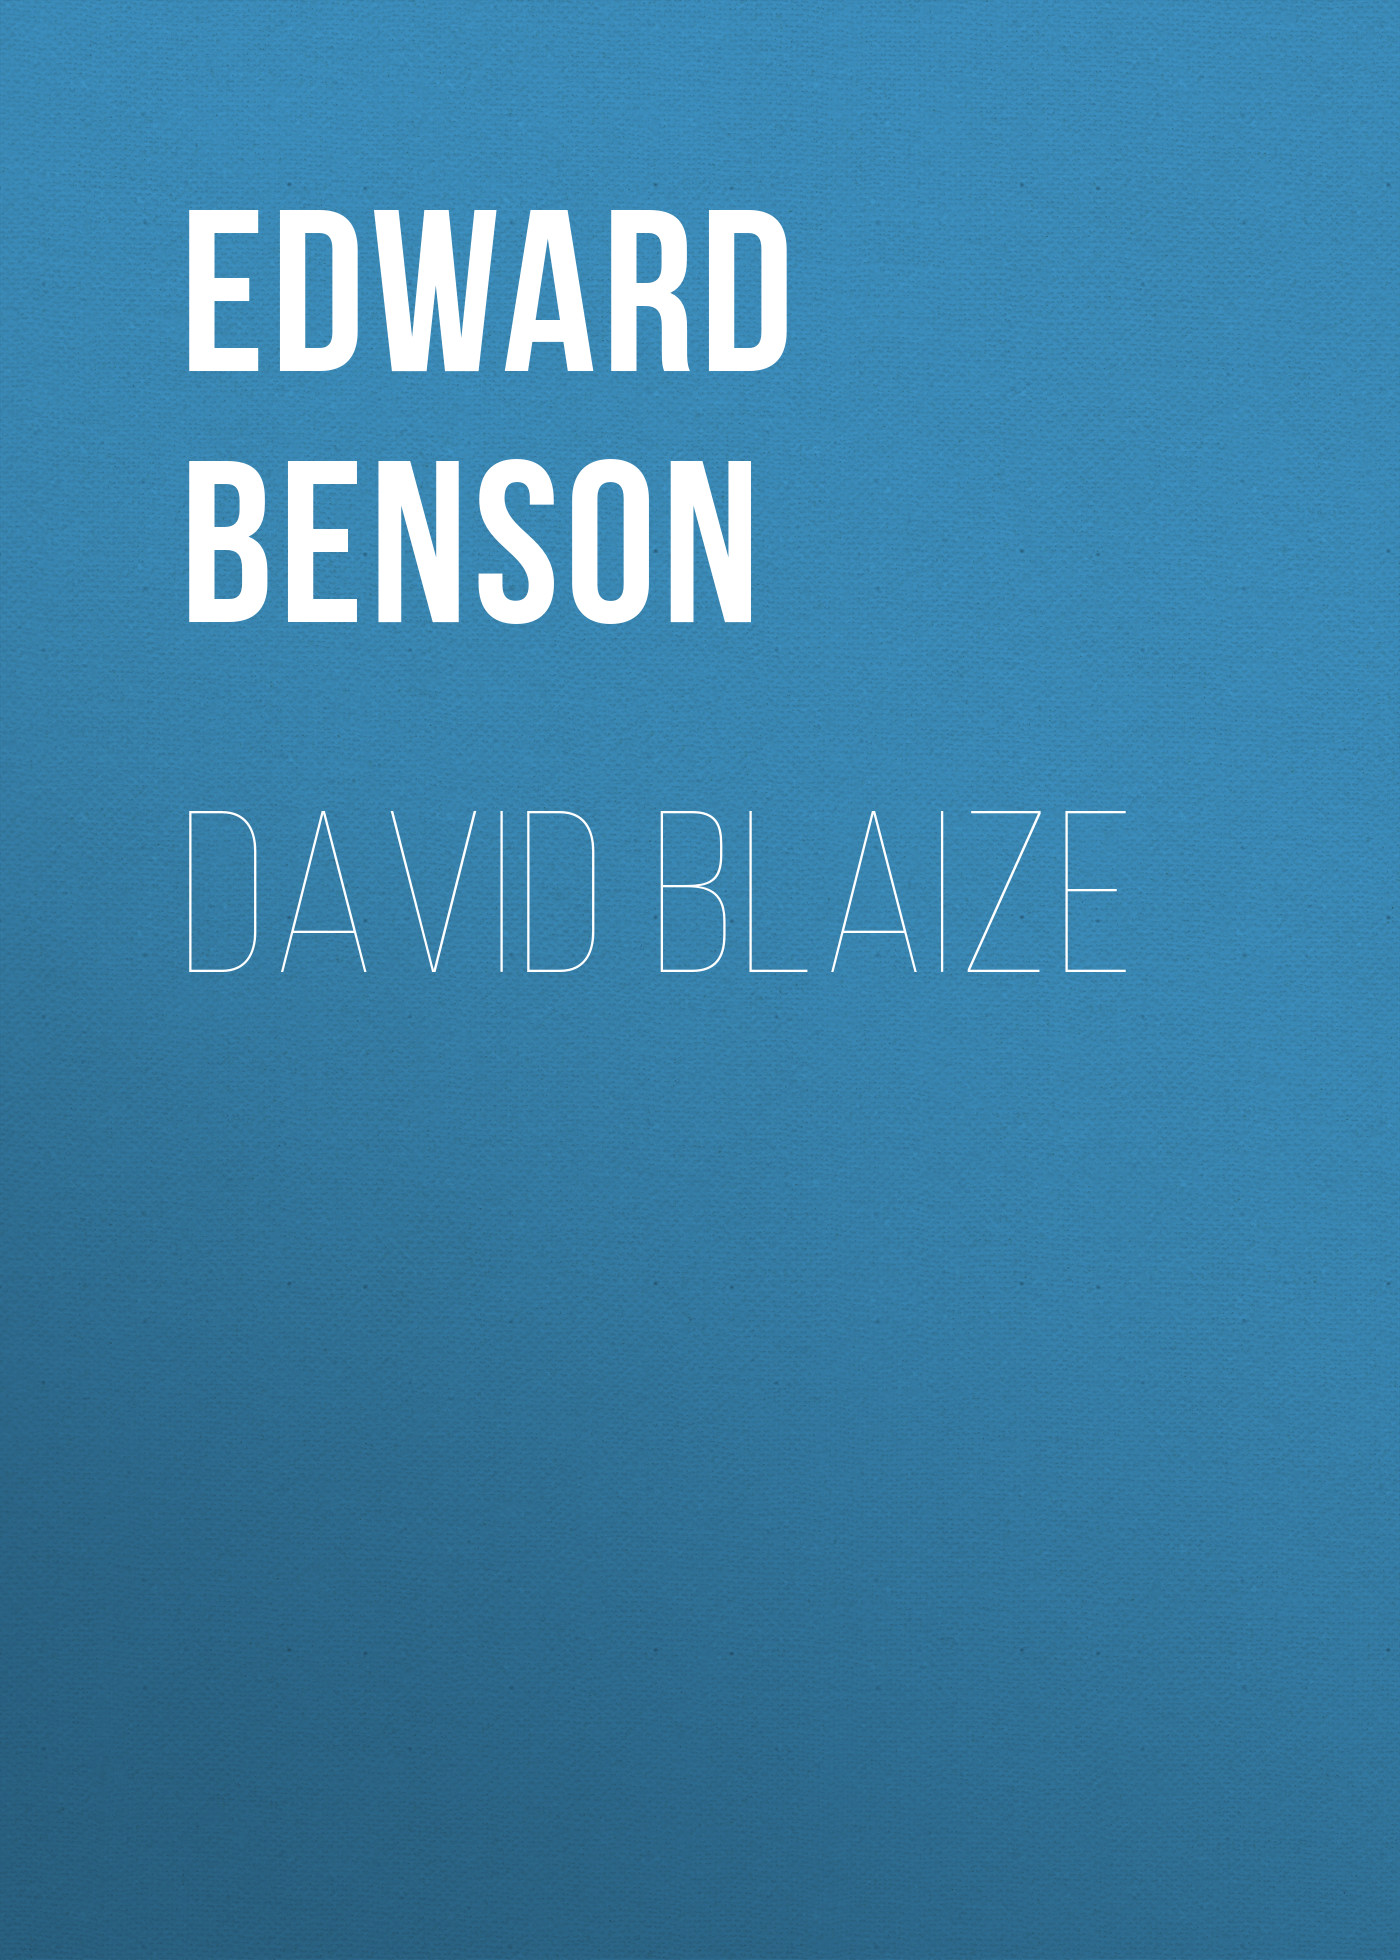 Книга David Blaize из серии , созданная Edward Benson, может относится к жанру Зарубежная классика. Стоимость электронной книги David Blaize с идентификатором 23165403 составляет 5.99 руб.